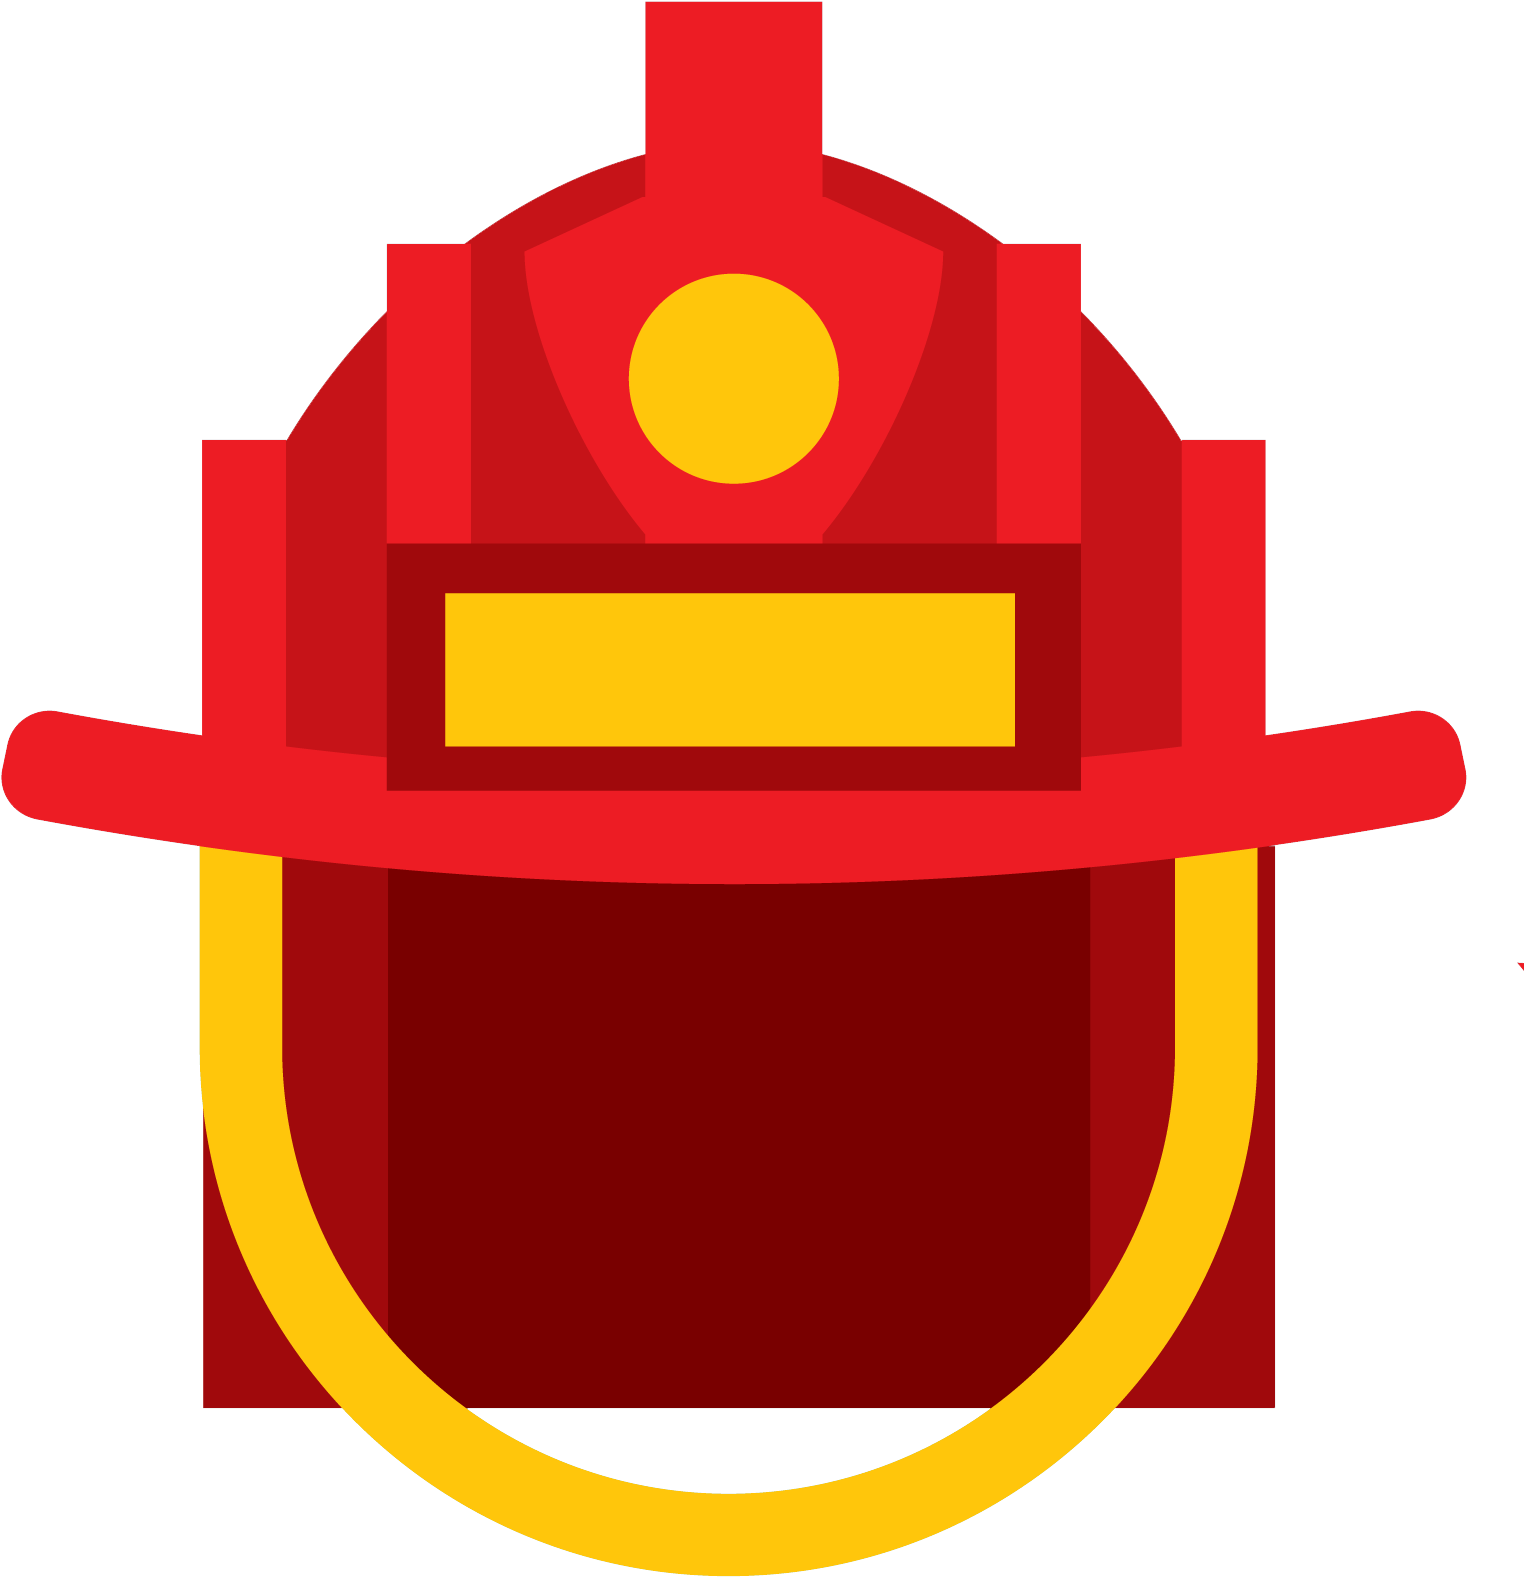 Firefighter Helmet Icon - Firefighter Helmet Icon (1594x1620)